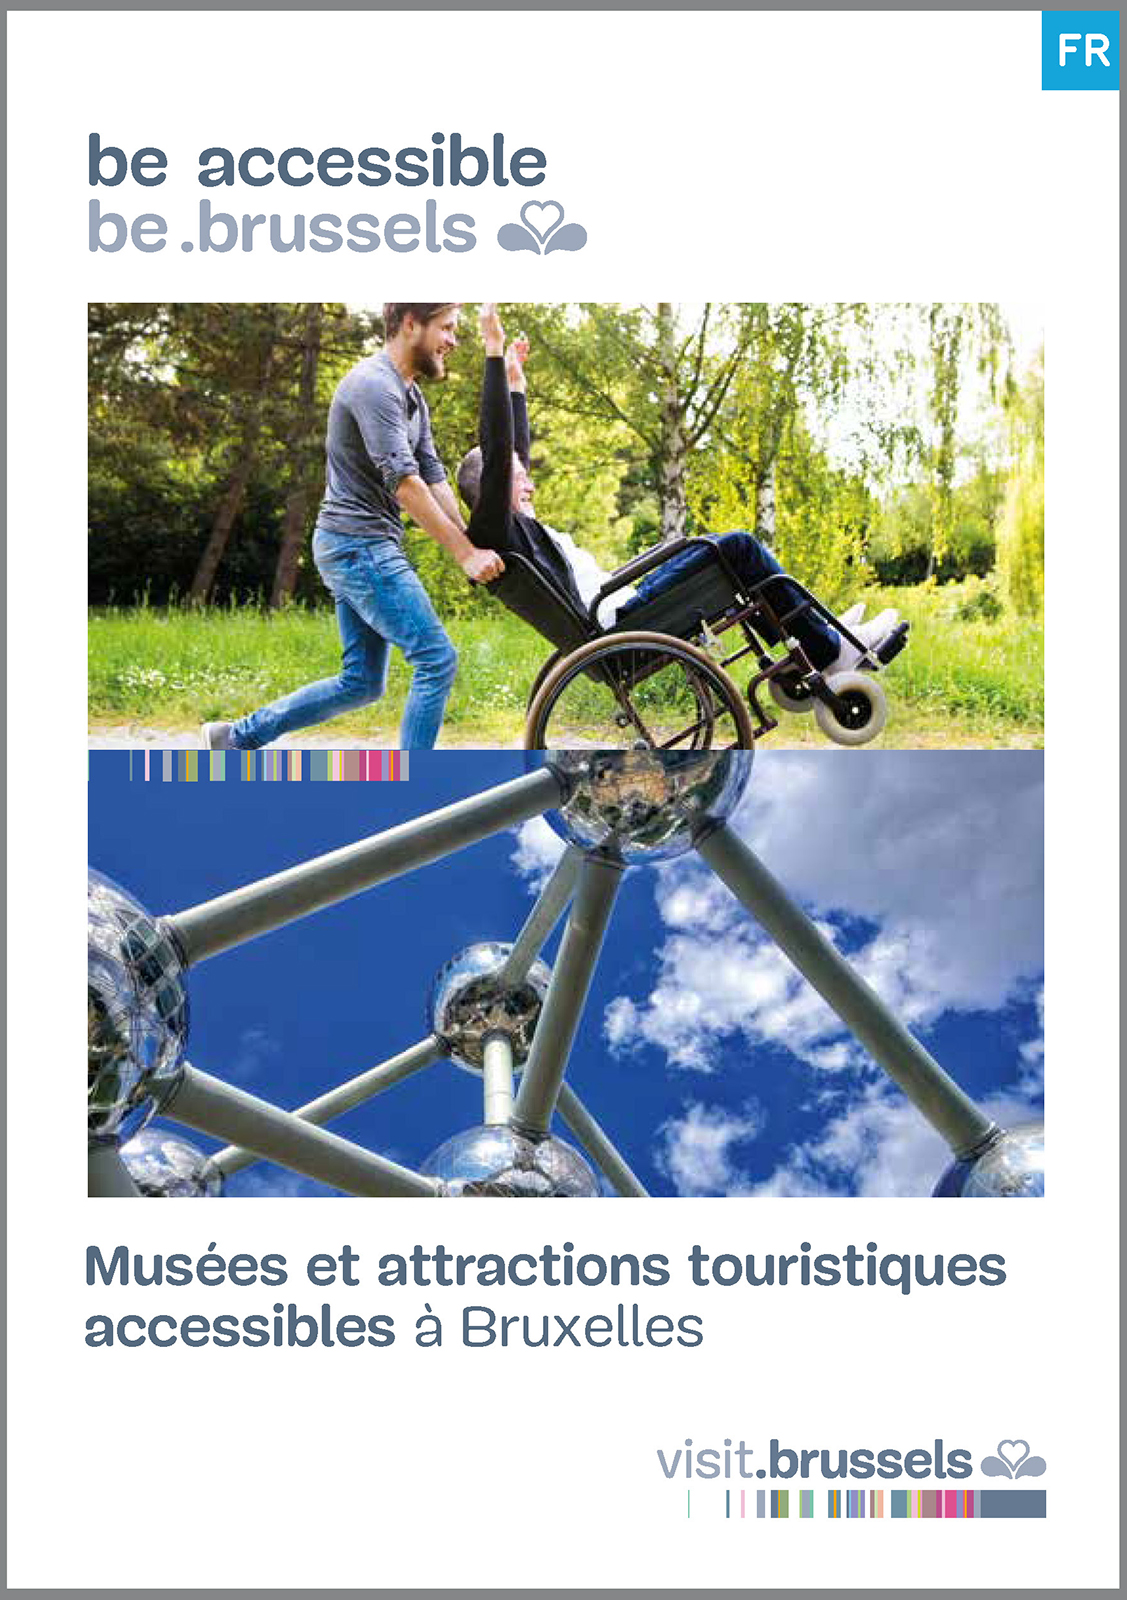 pmr : Musées et attractions touristiques à Bruxelles